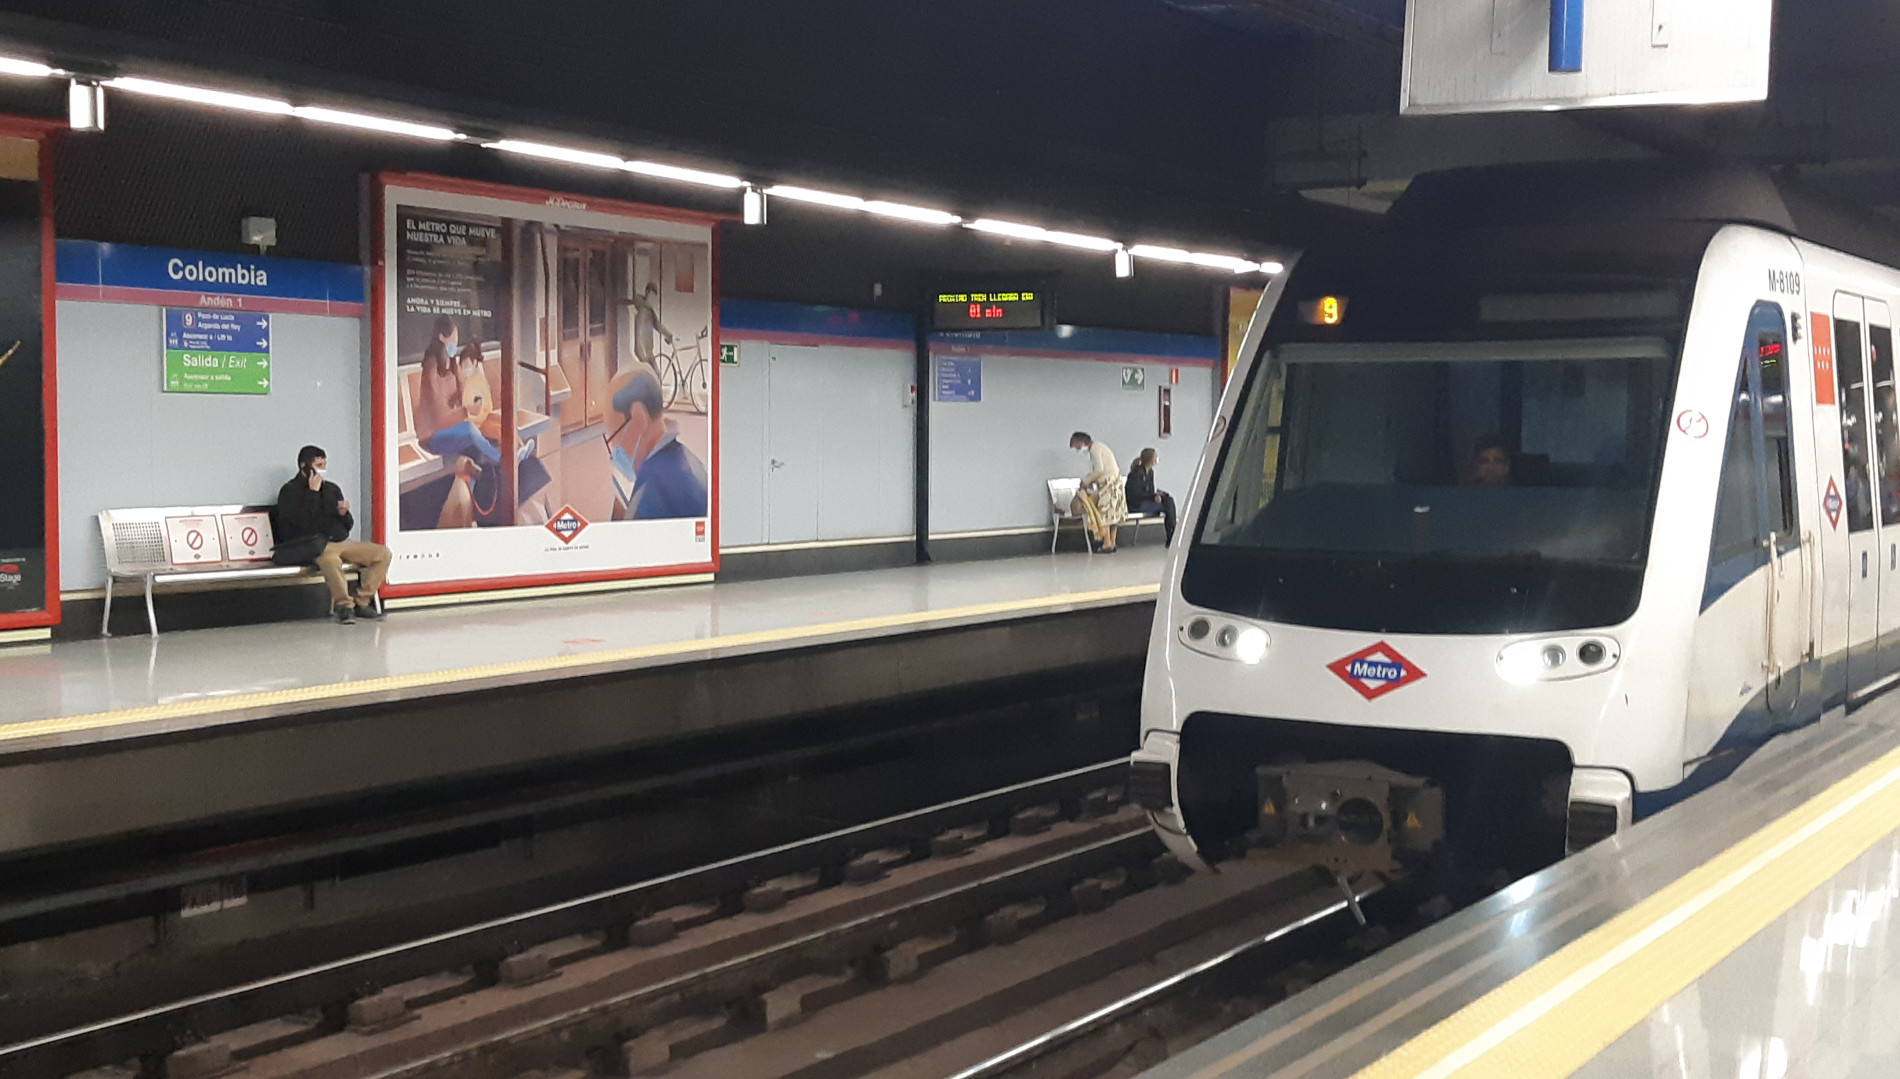 La estación Colombia del metro de Madrid (España) ahora también se llama  Cien Años de Soledad - Infobae